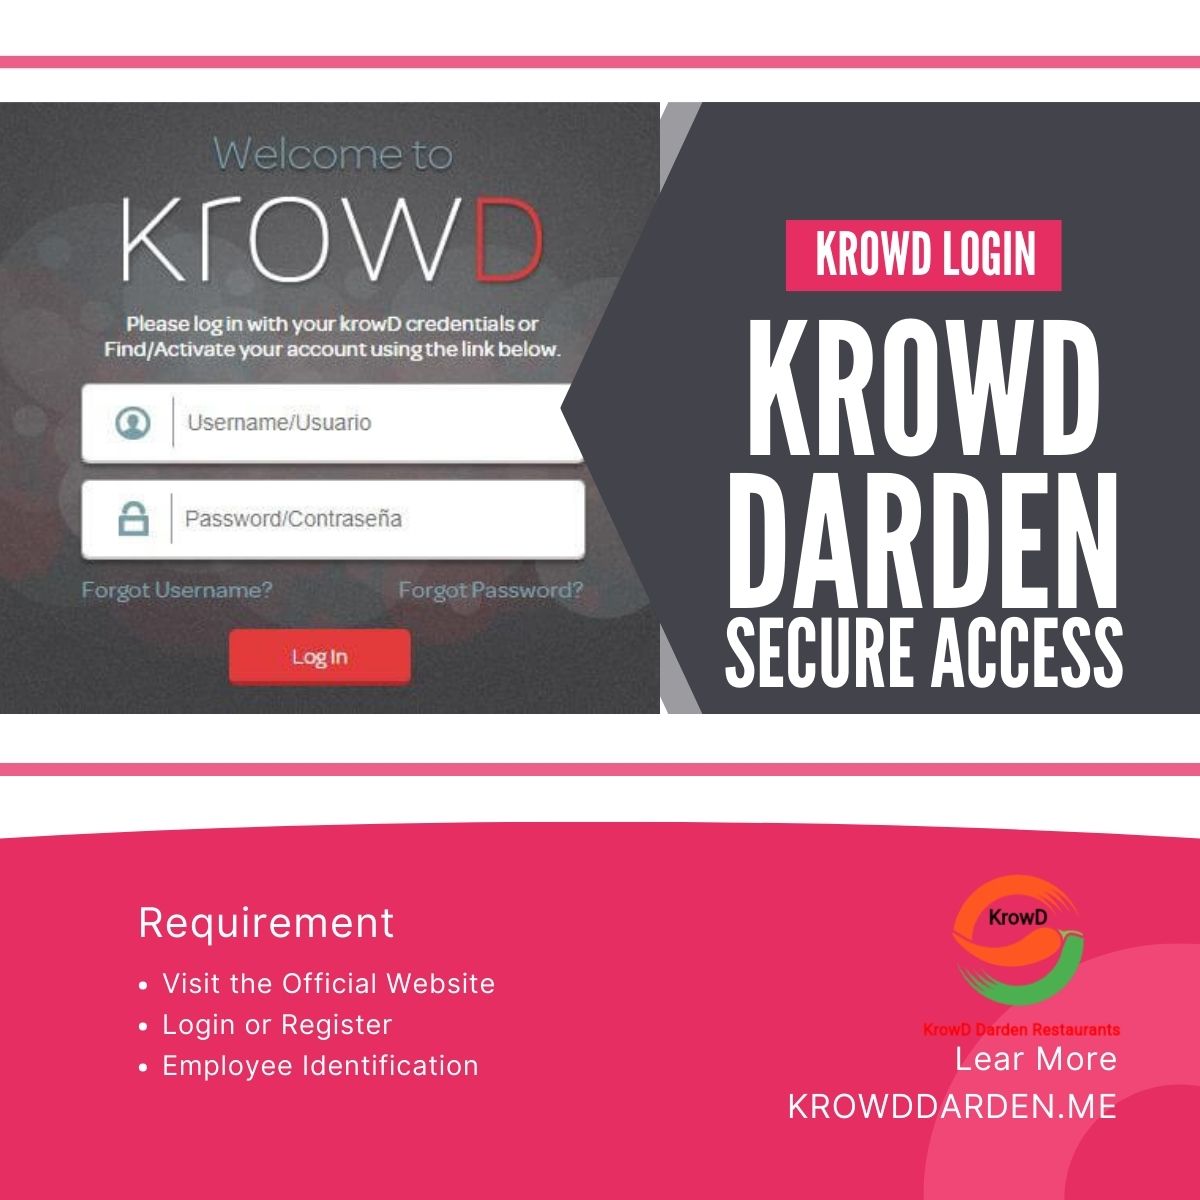 Krowd Darden | Krowd Darden App | Krowd Darden Login | Krowd Darden Portal | Krowd Darden Secure Access